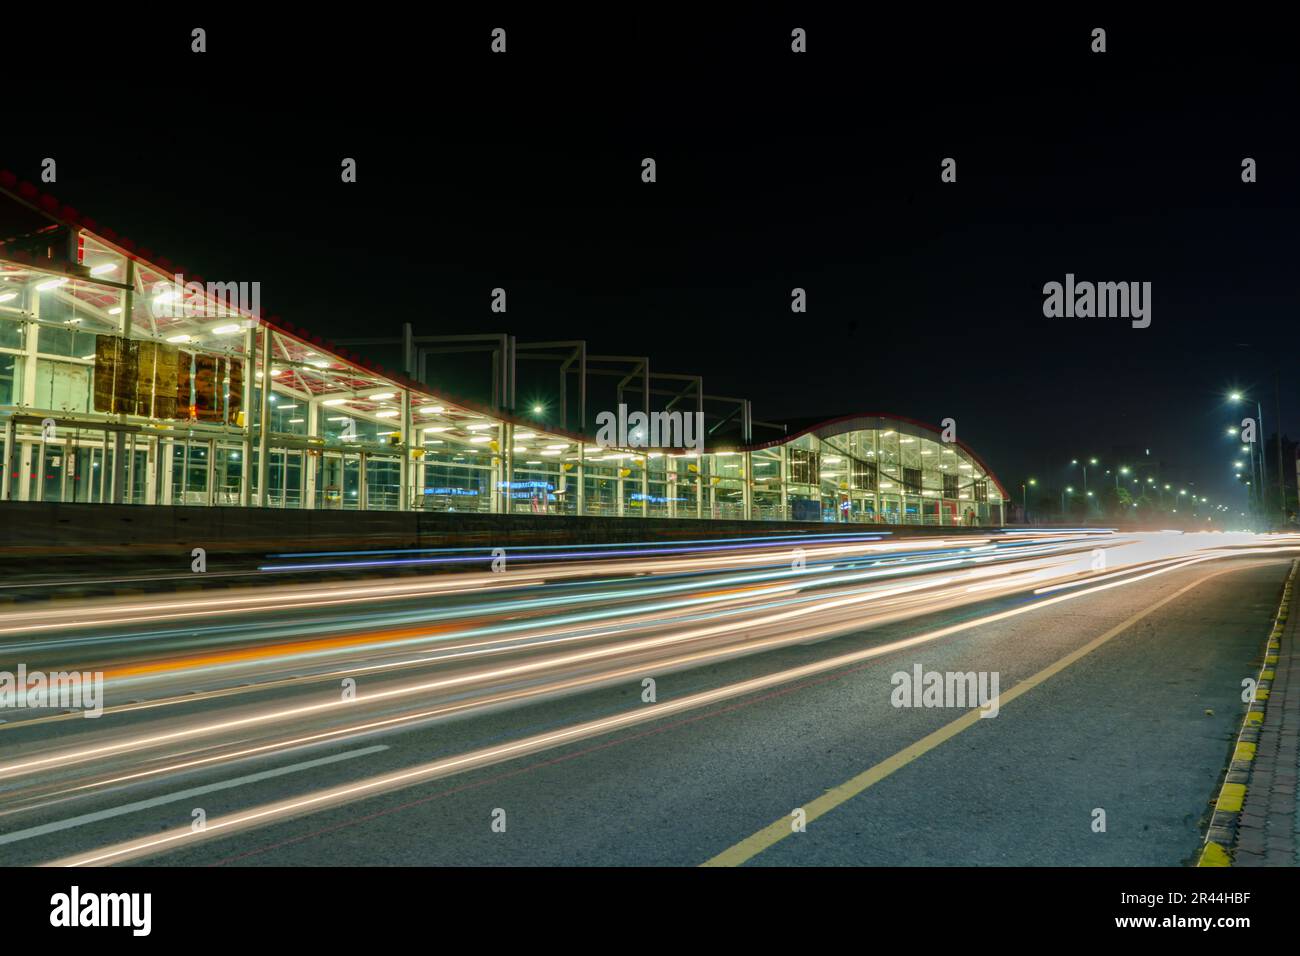 belle vue de nuit des stations de bus de métro islamabad longue exposition des lumières de sentier. Banque D'Images